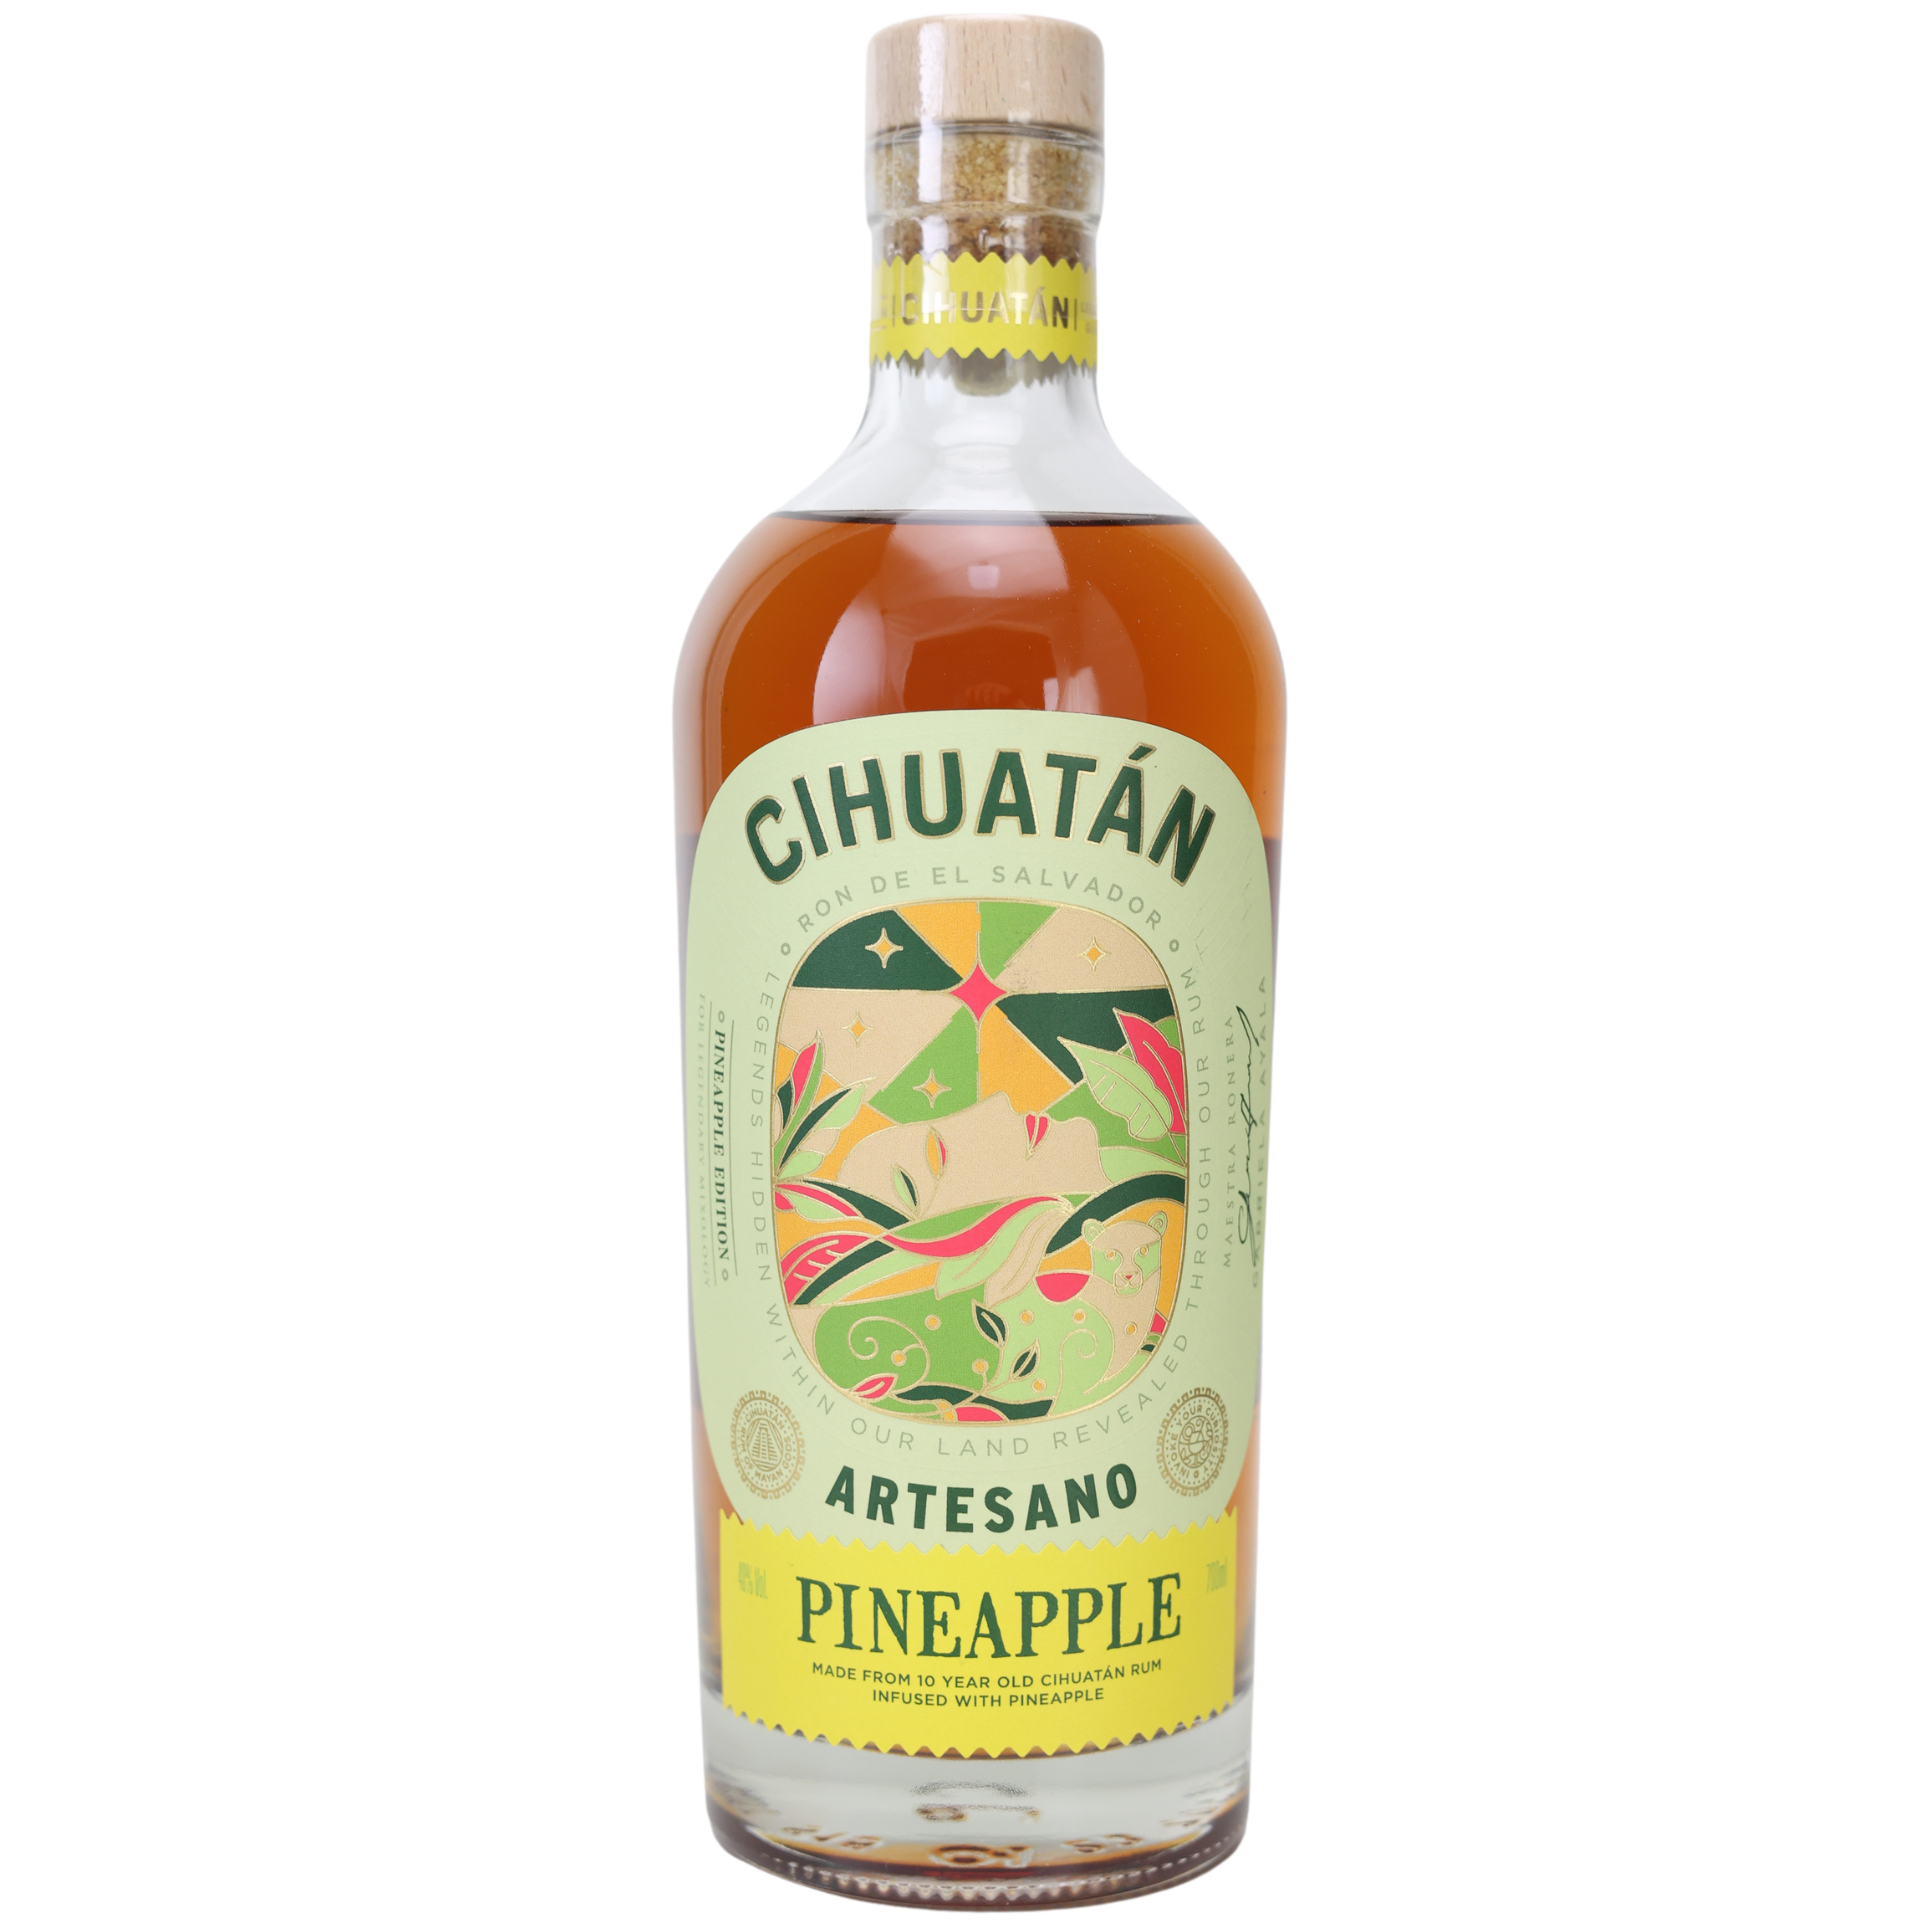 Ron Cihuatan Artesano Pineapple Edition 40% 0,7l